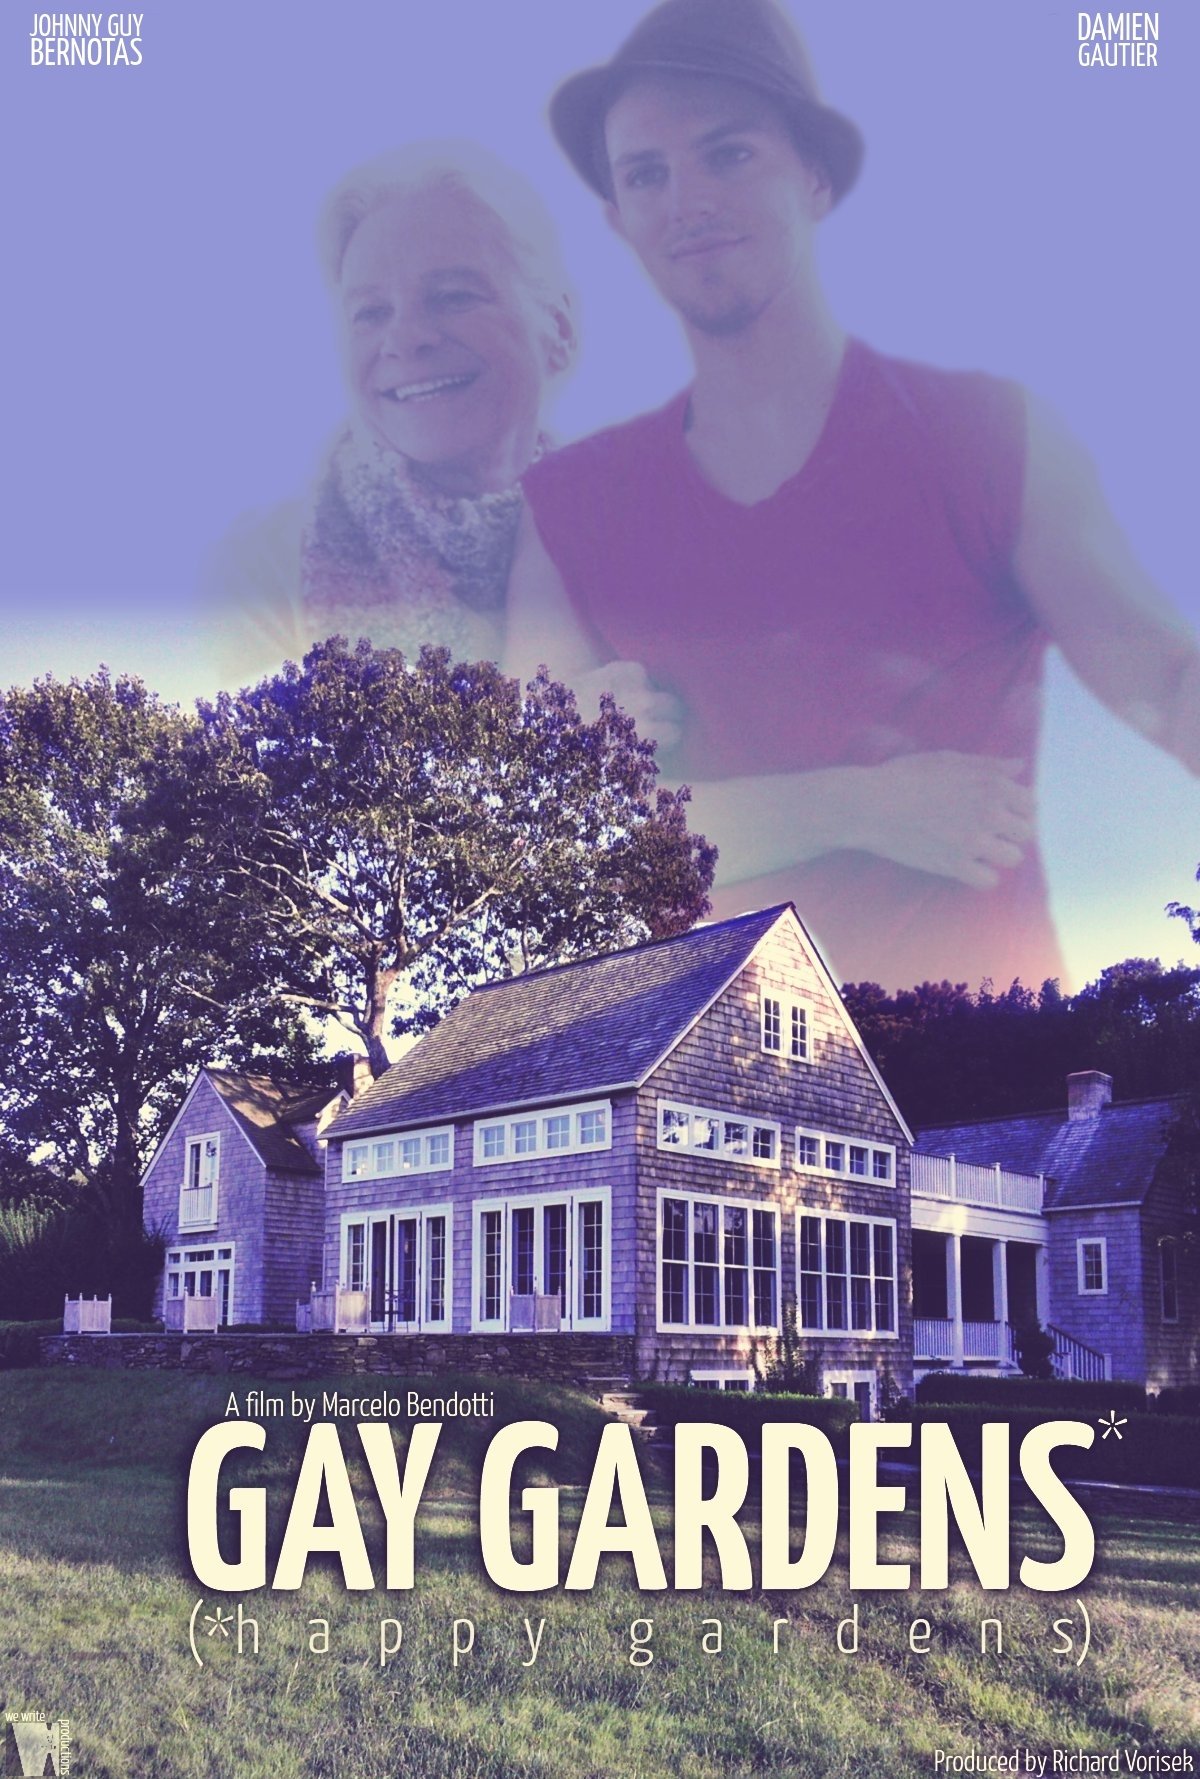 John Bernotas, Damien Gautier and Richard Vorisek in Gay Gardens* (*Happy Gardens) (2013)